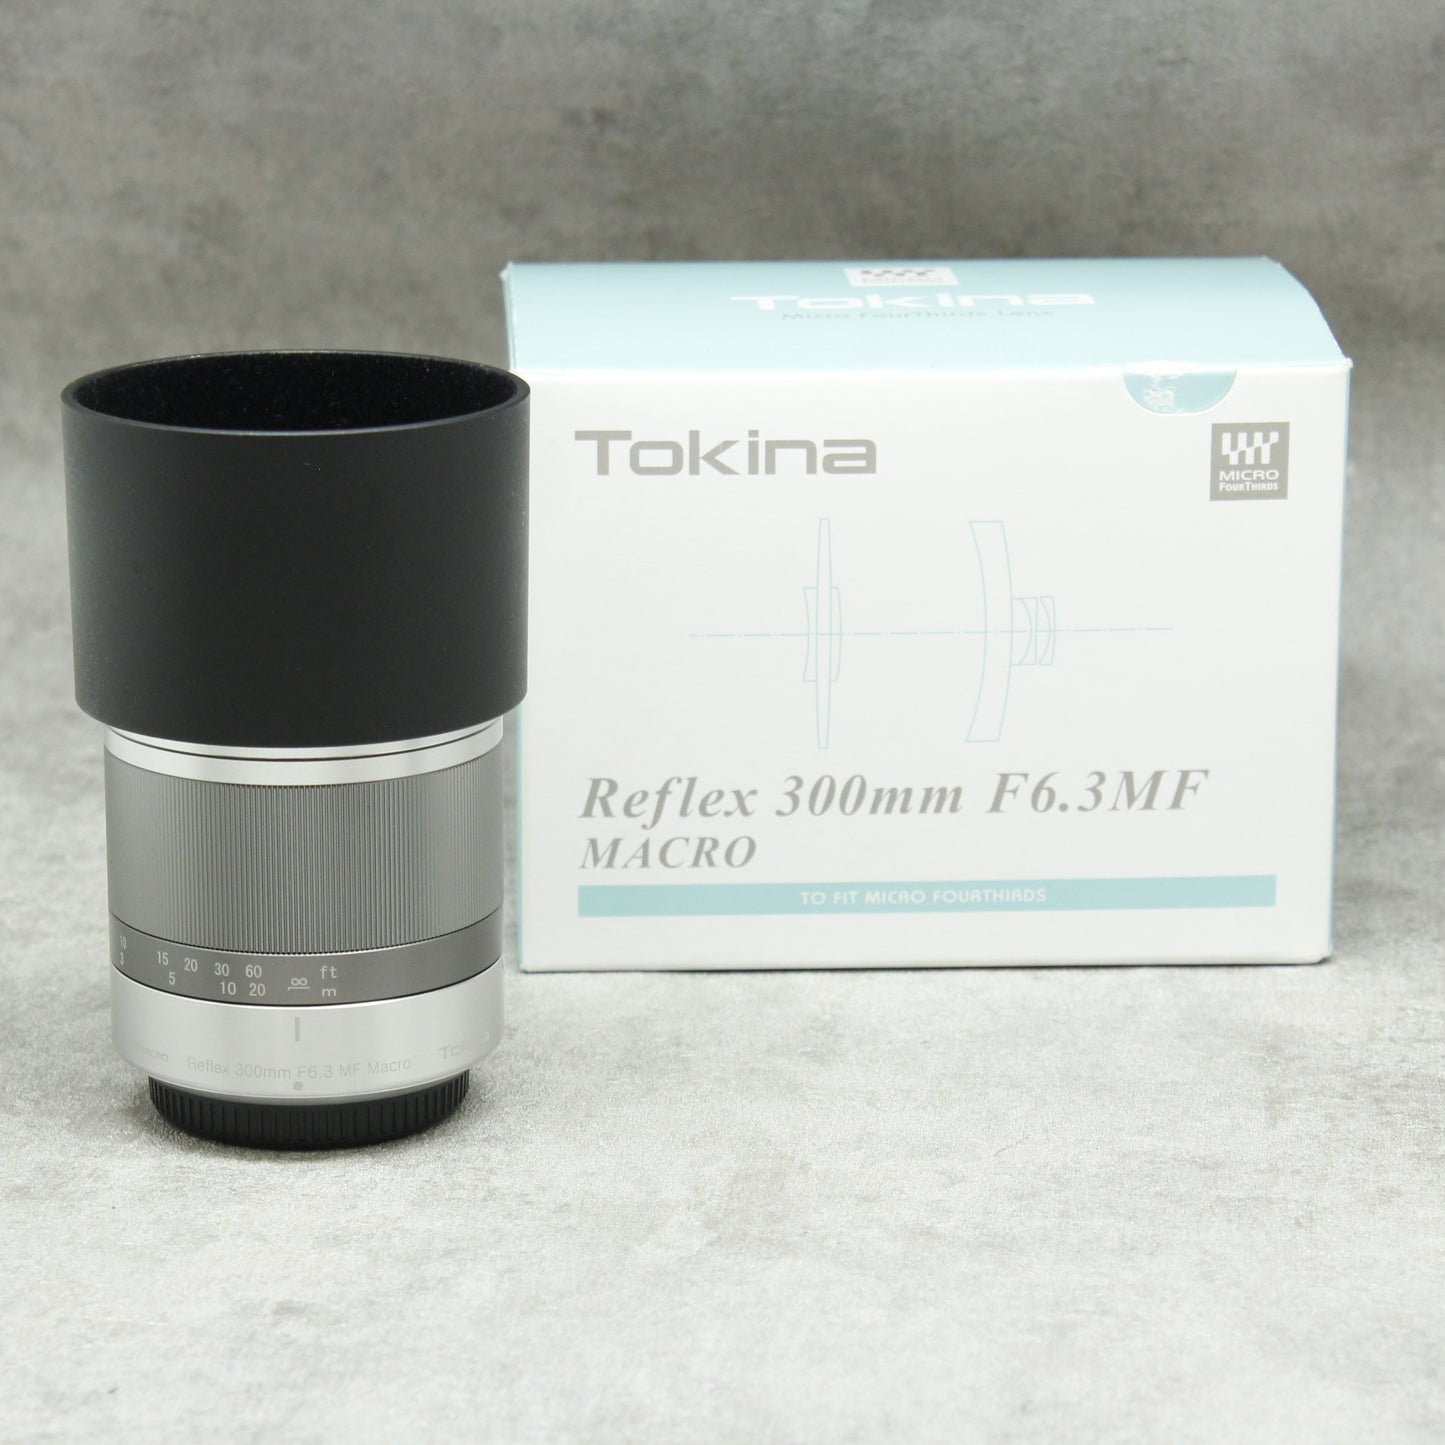 中古品 Tokina Reflex 300mm F6.3 MF MACRO 【マイクロフォーサーズ用 